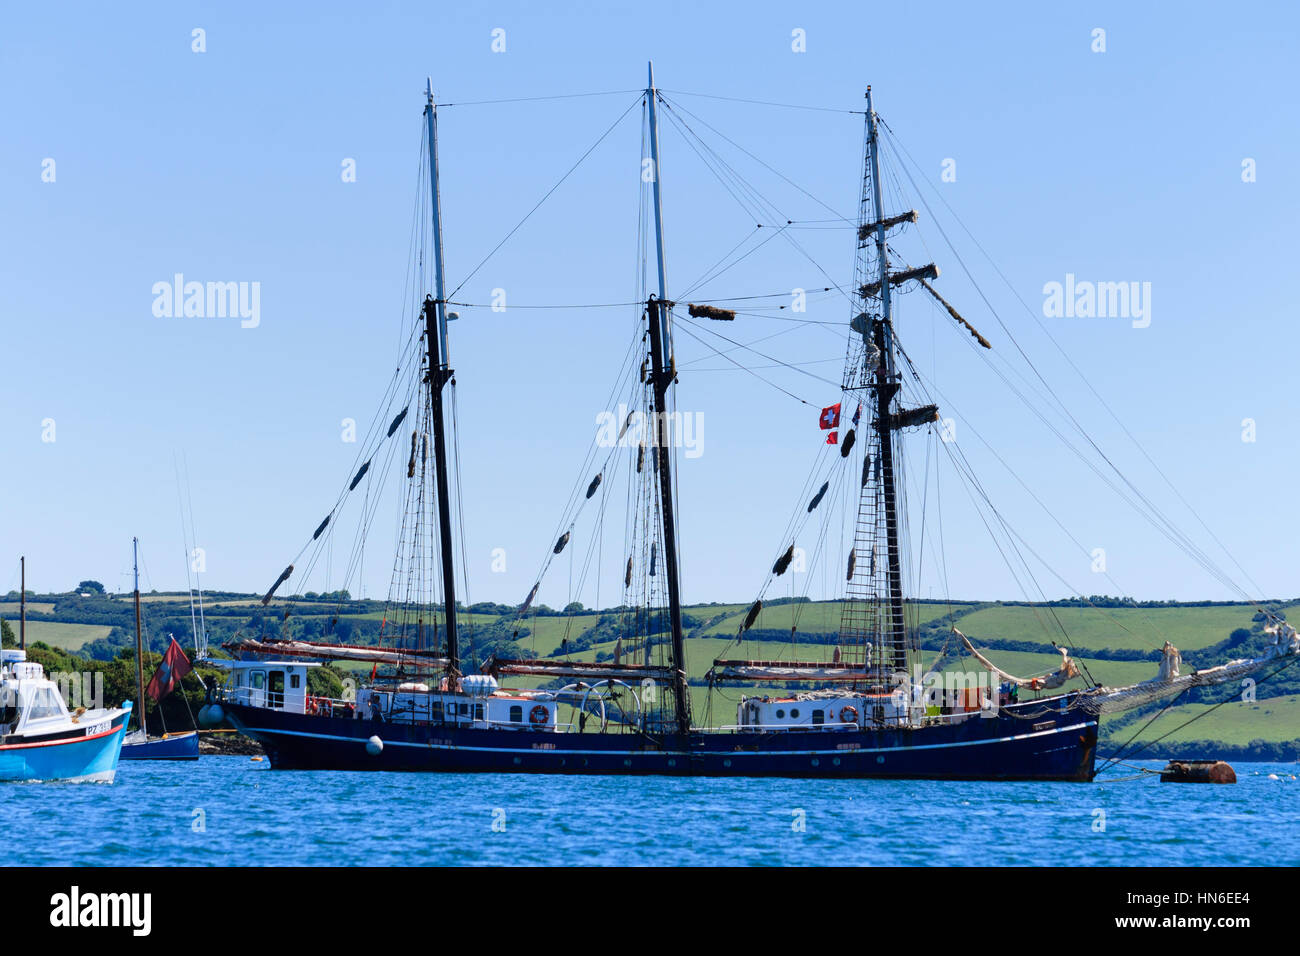 Swiss registrato 3 masted Tall Ship, Salomon, ormeggiata nel fiume Penryn, Falmouth, Cornwall, Regno Unito, Giugno 2010 Foto Stock